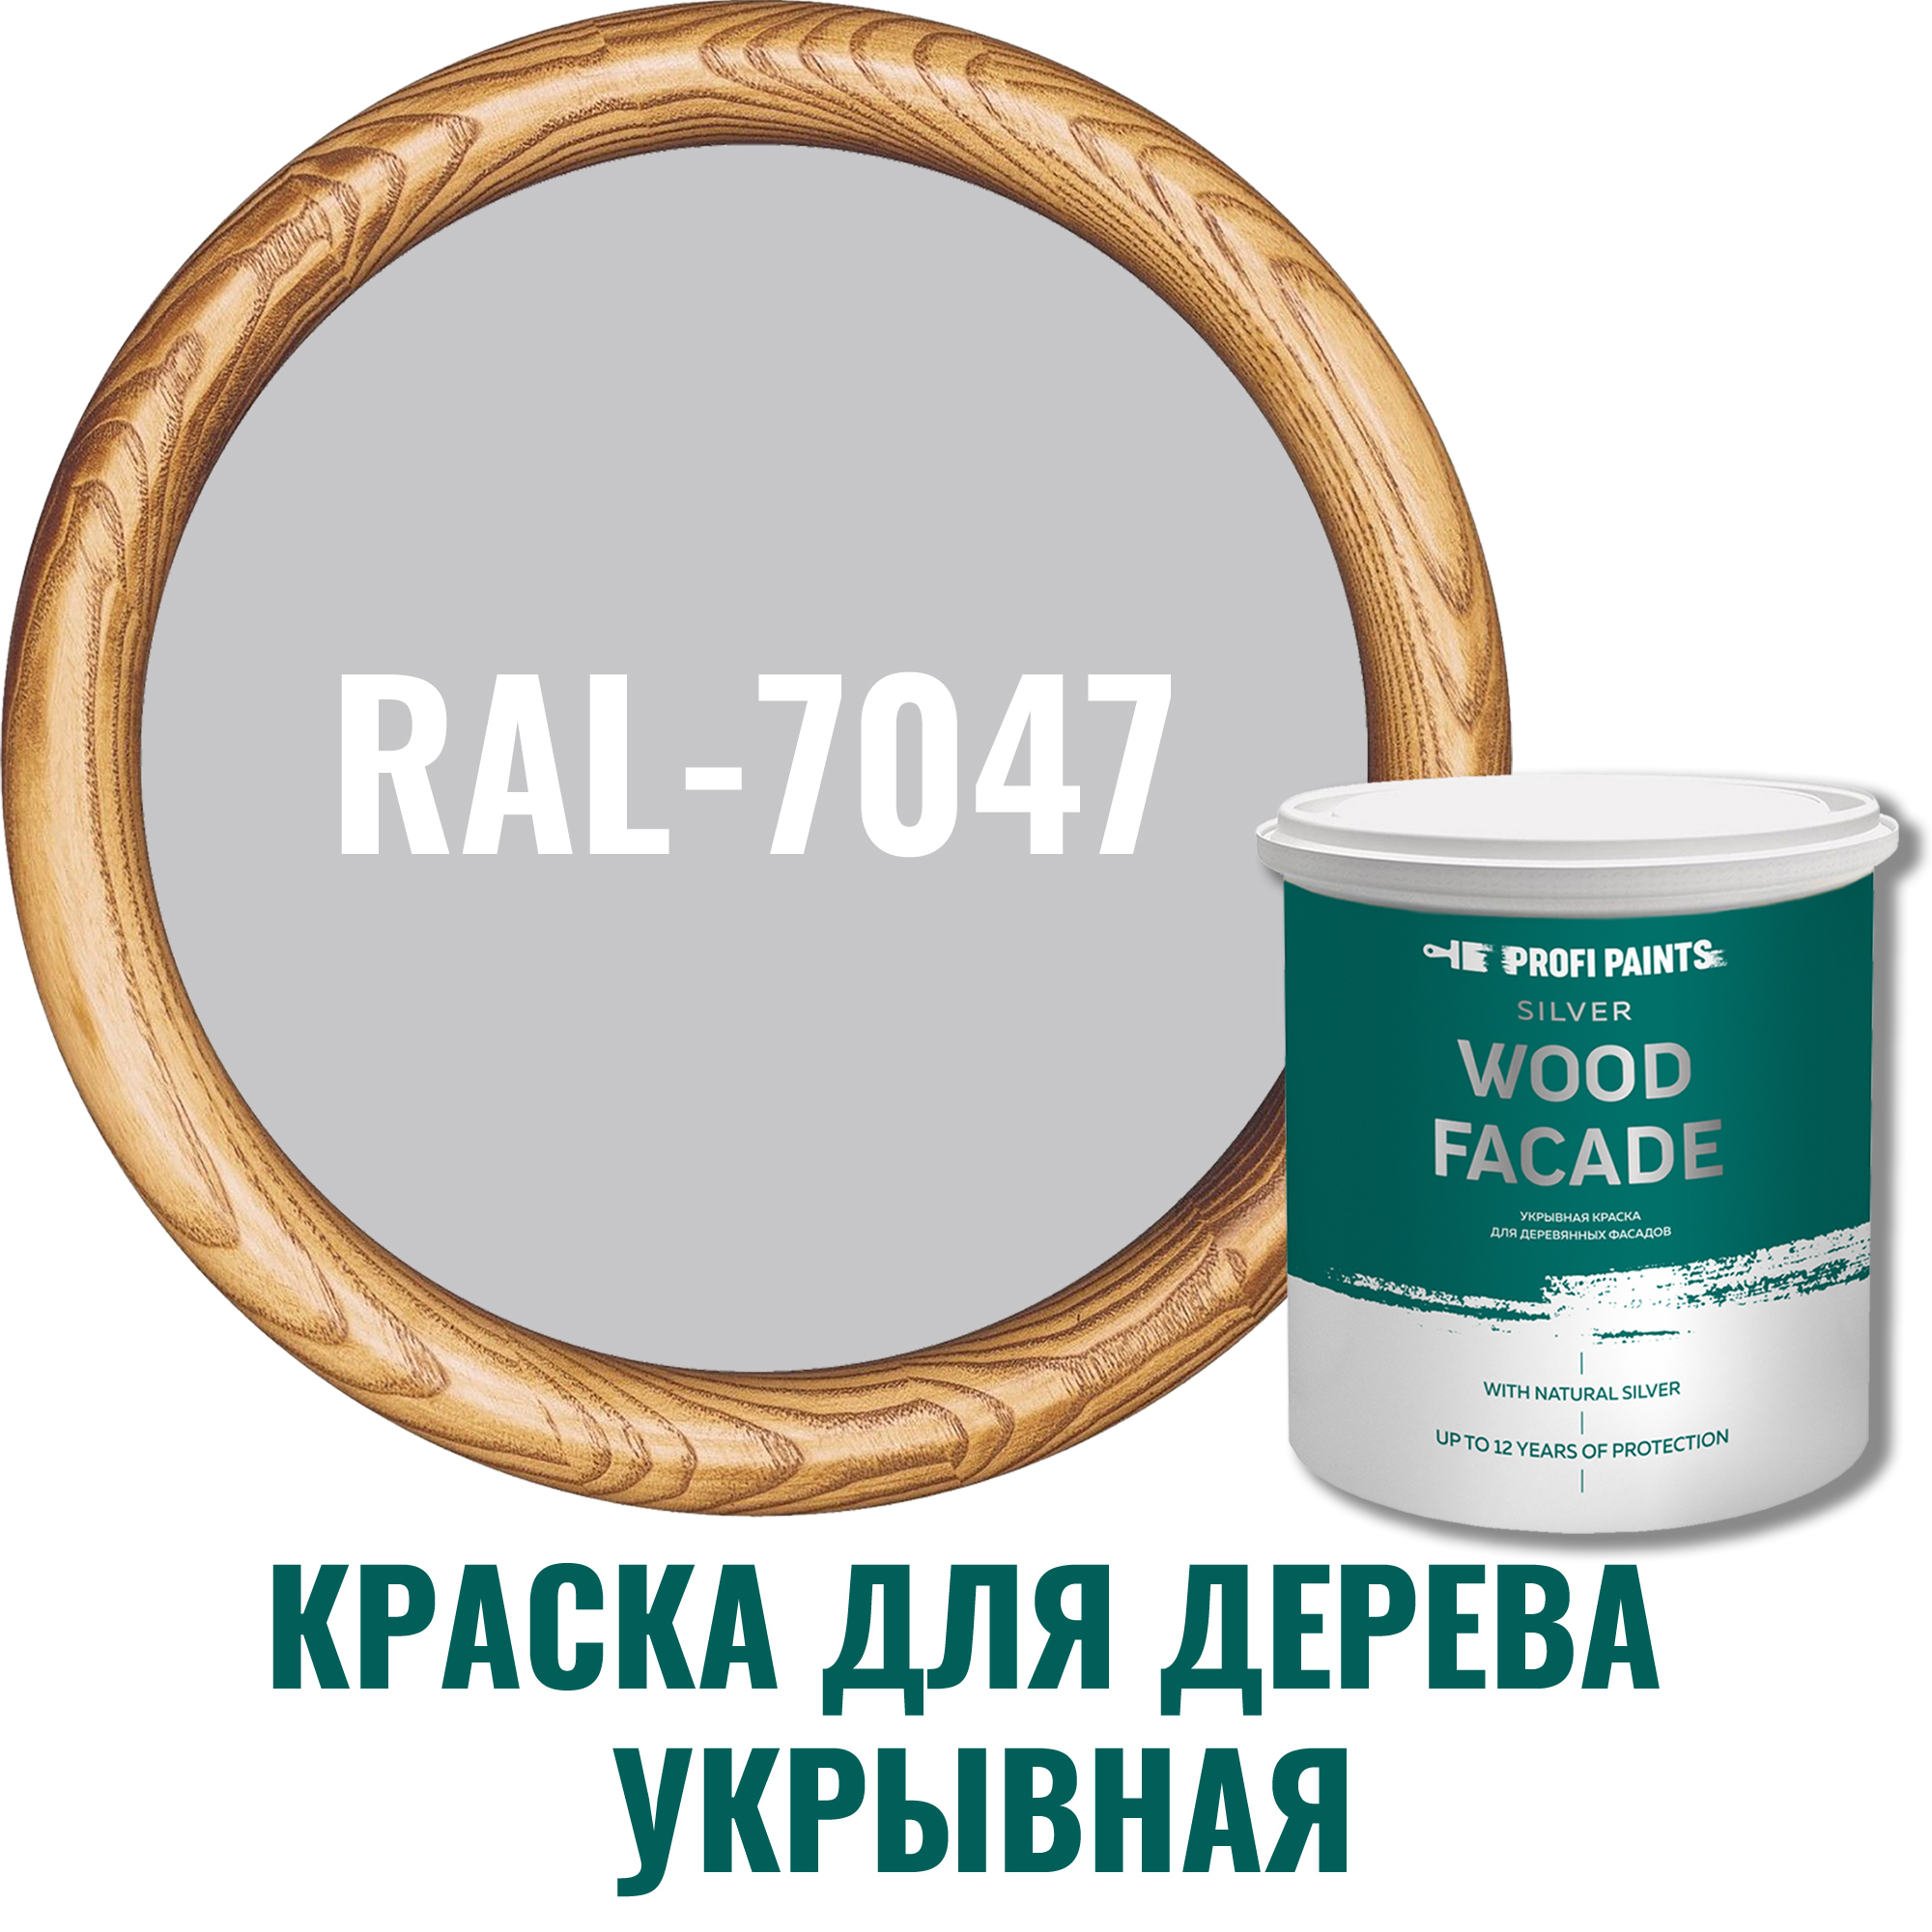 91007123 Краска для дерева Silver Wood Fasade цвет RAL-7047 телегрей 4 9 л STLM-0437171 PROFIPAINTS